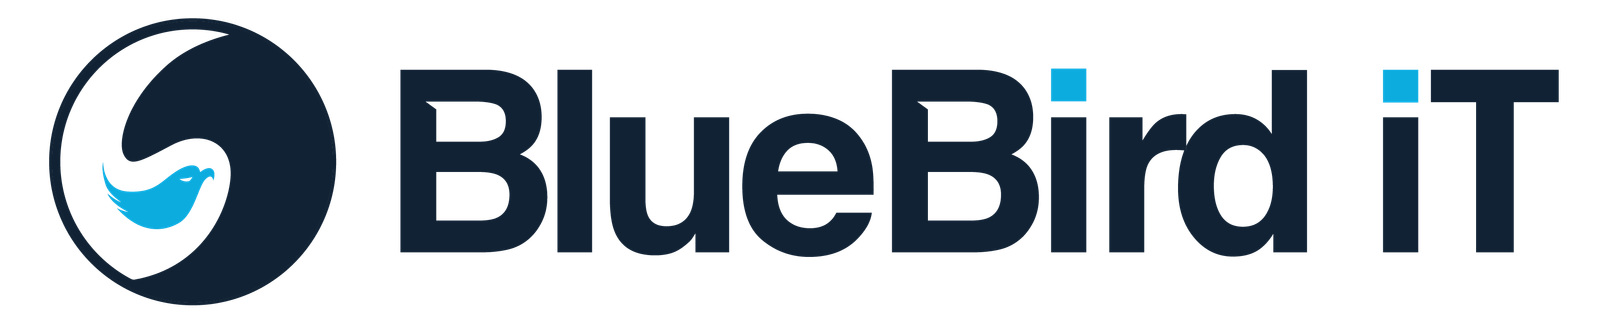 Bluebird iT logo - colour